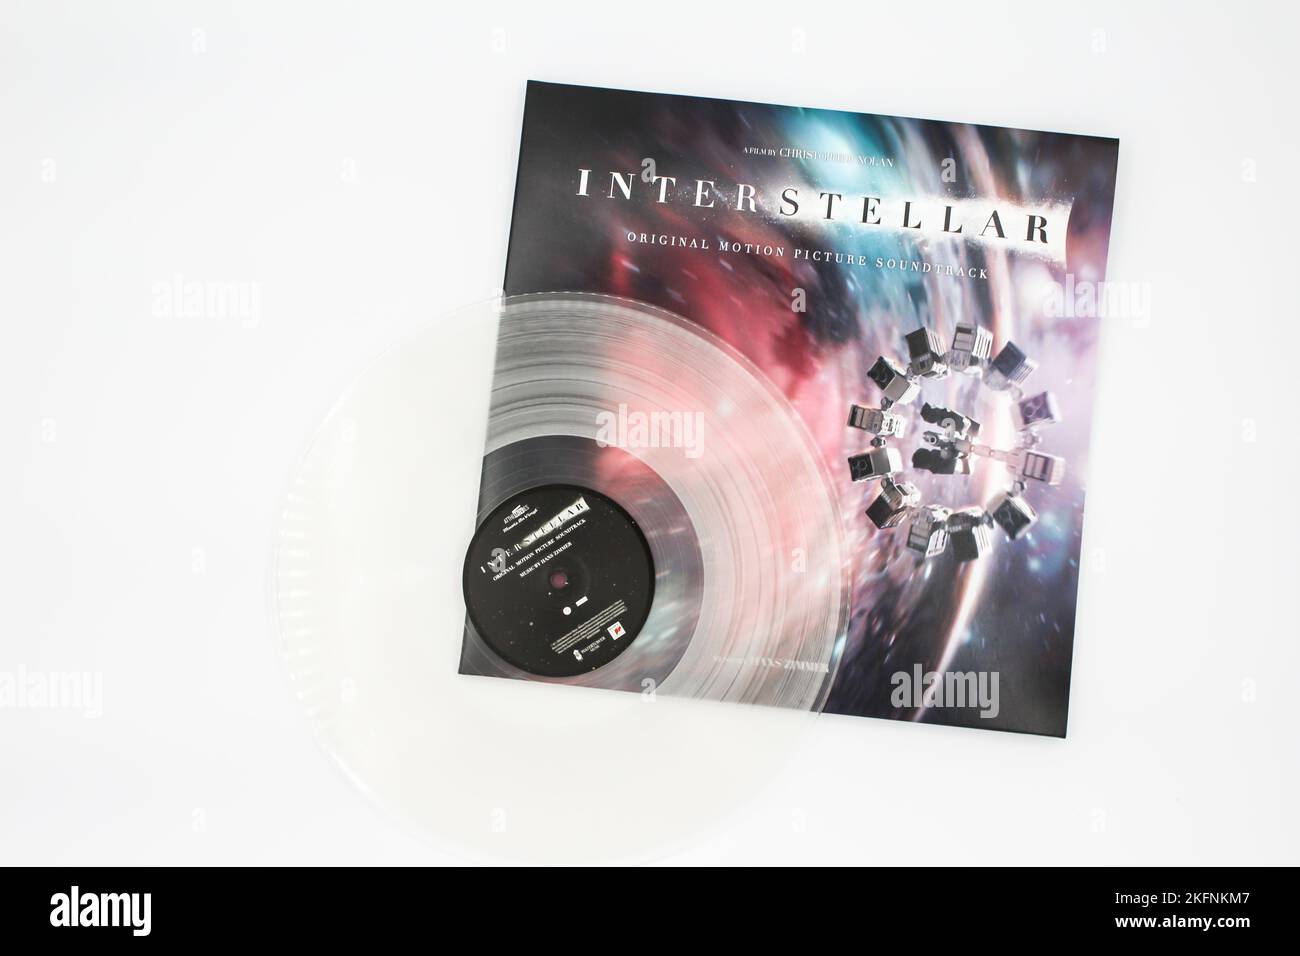 Interstellar Original Motion Picture Soundtrack è l'album composto da Hans Zimmer diretto da Christopher Nolan. Copertina dell'album in vinile. Foto Stock